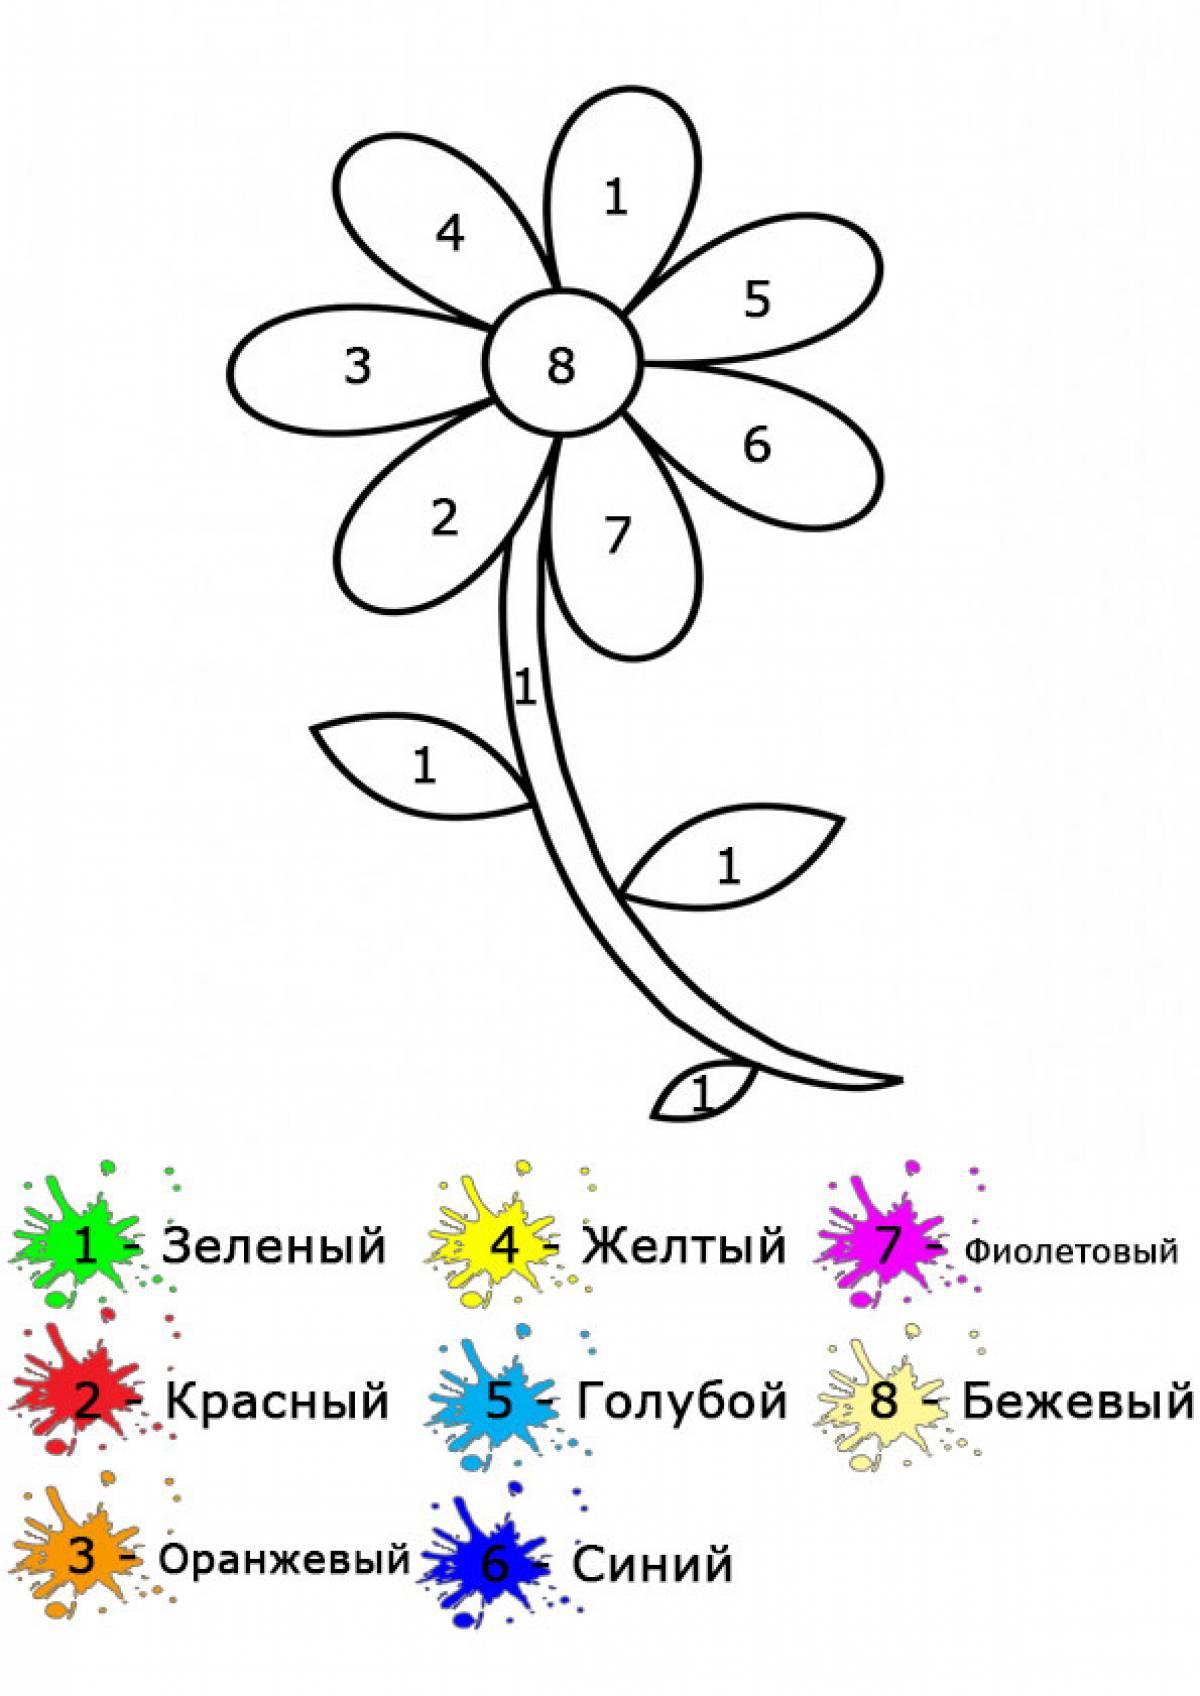 Раскраска цвеьок синицветик